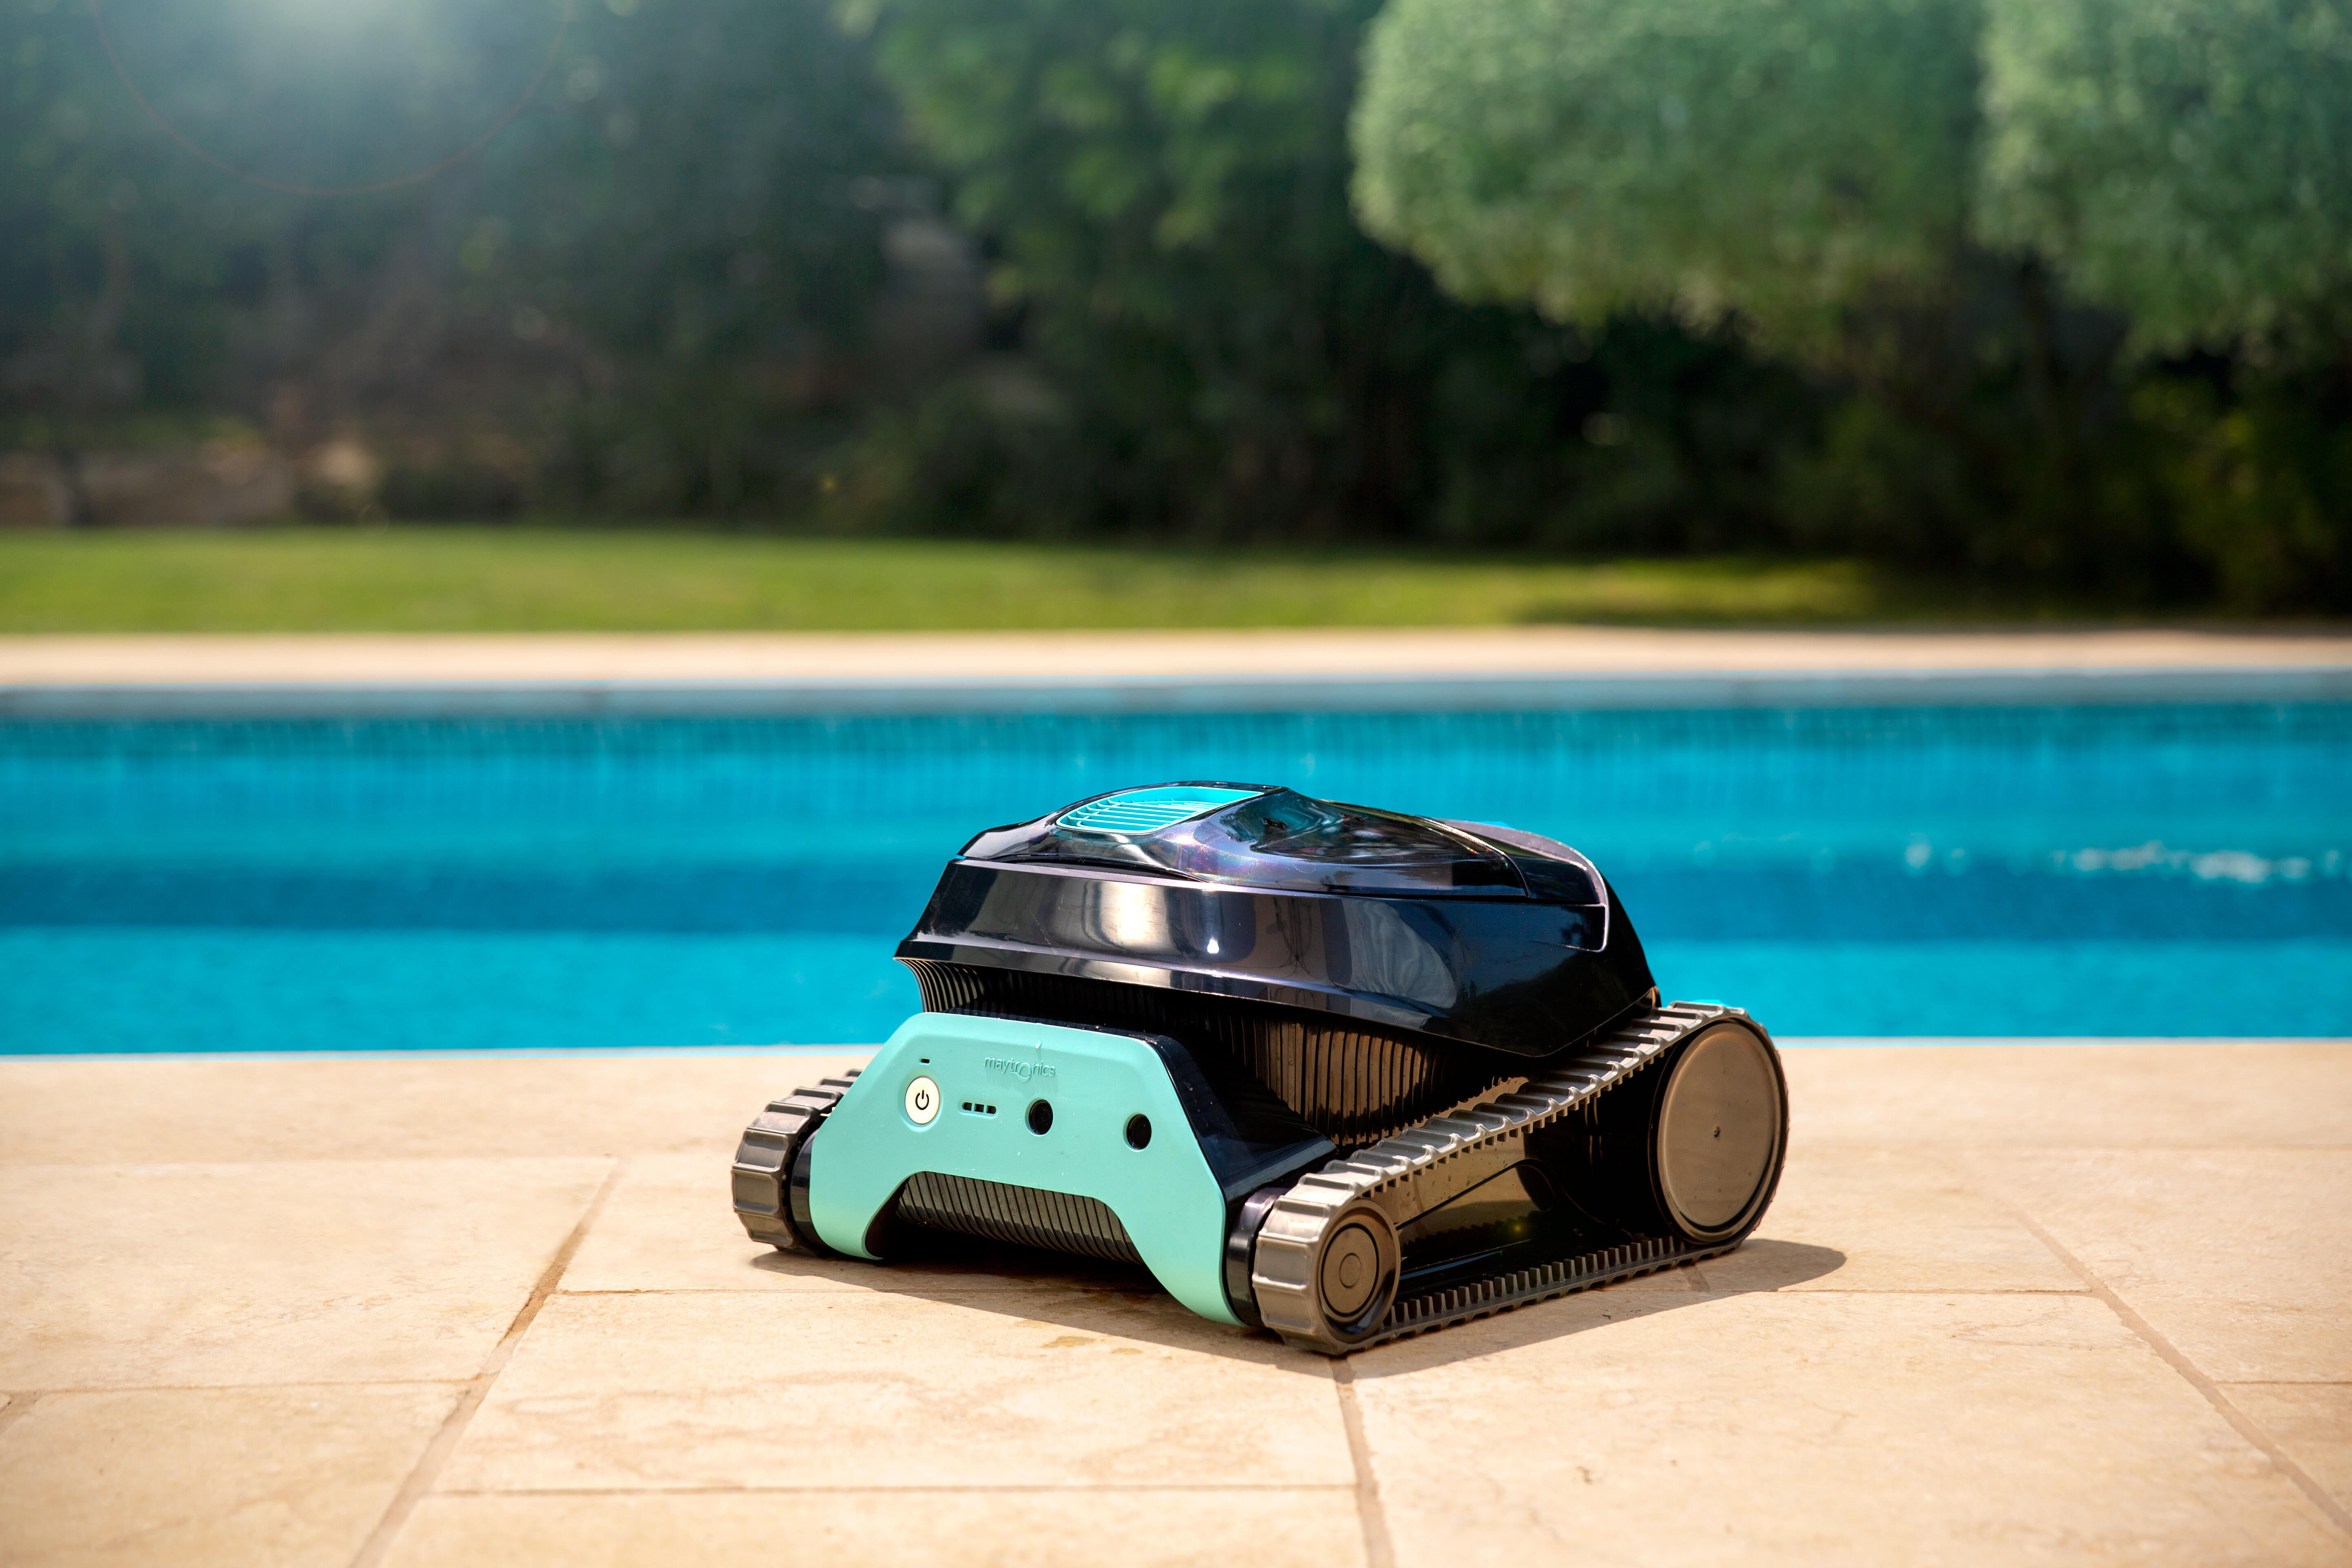 Robot Limpiafondos eléctrico para limpieza de fondo y paredes para piscina  máximo de 10 x 5